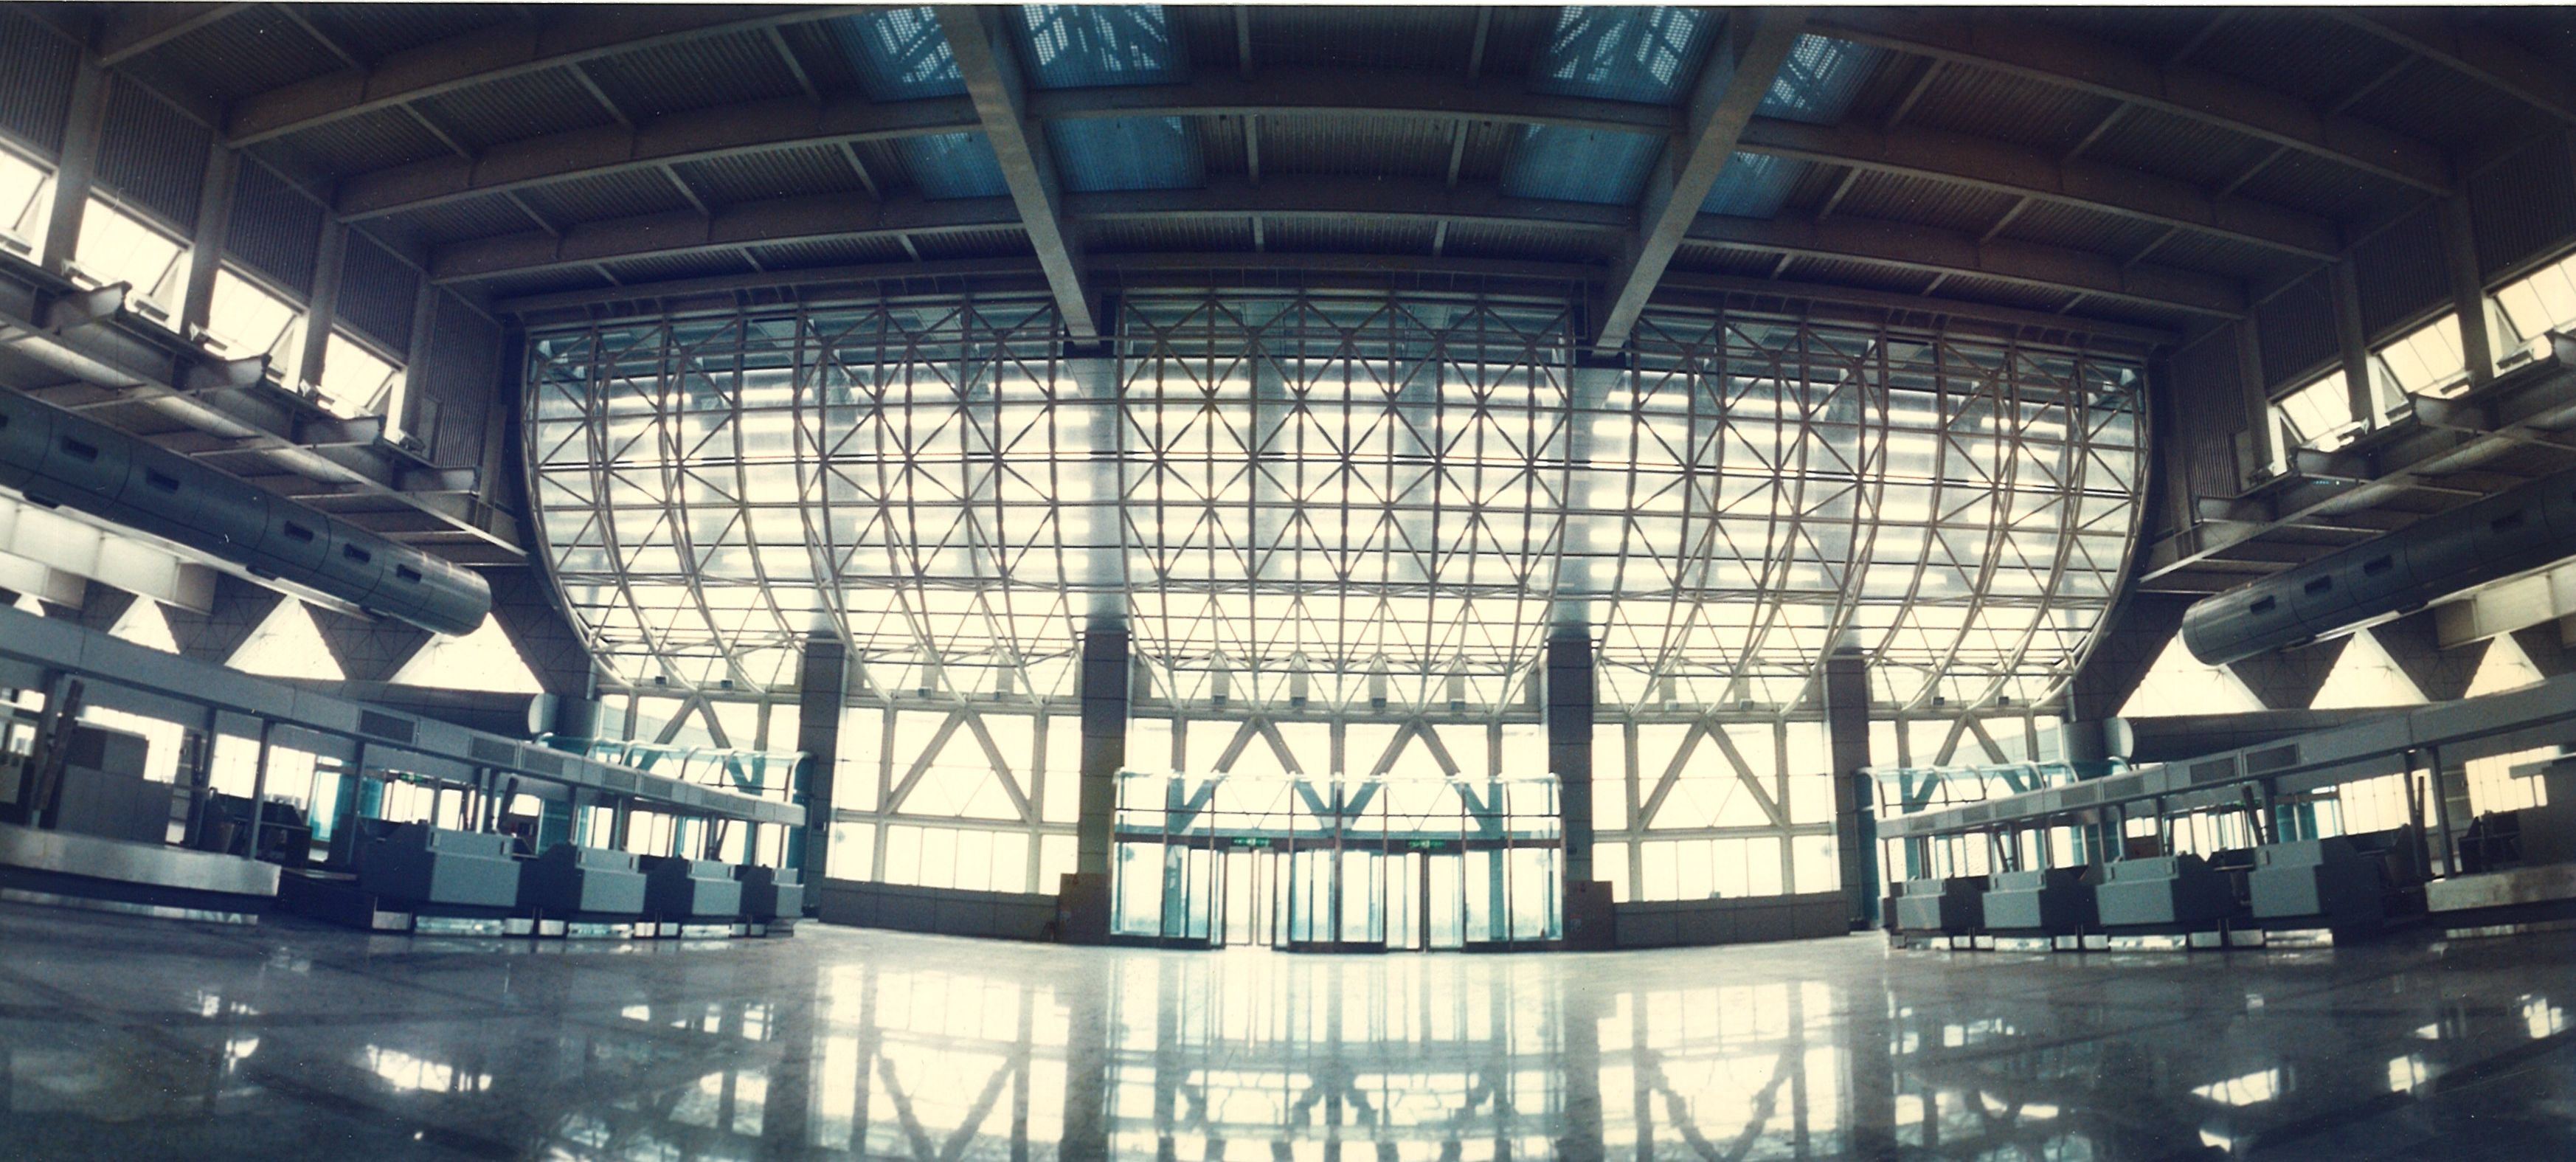 高雄國際航空站國際線航廈86年報到大廳完工